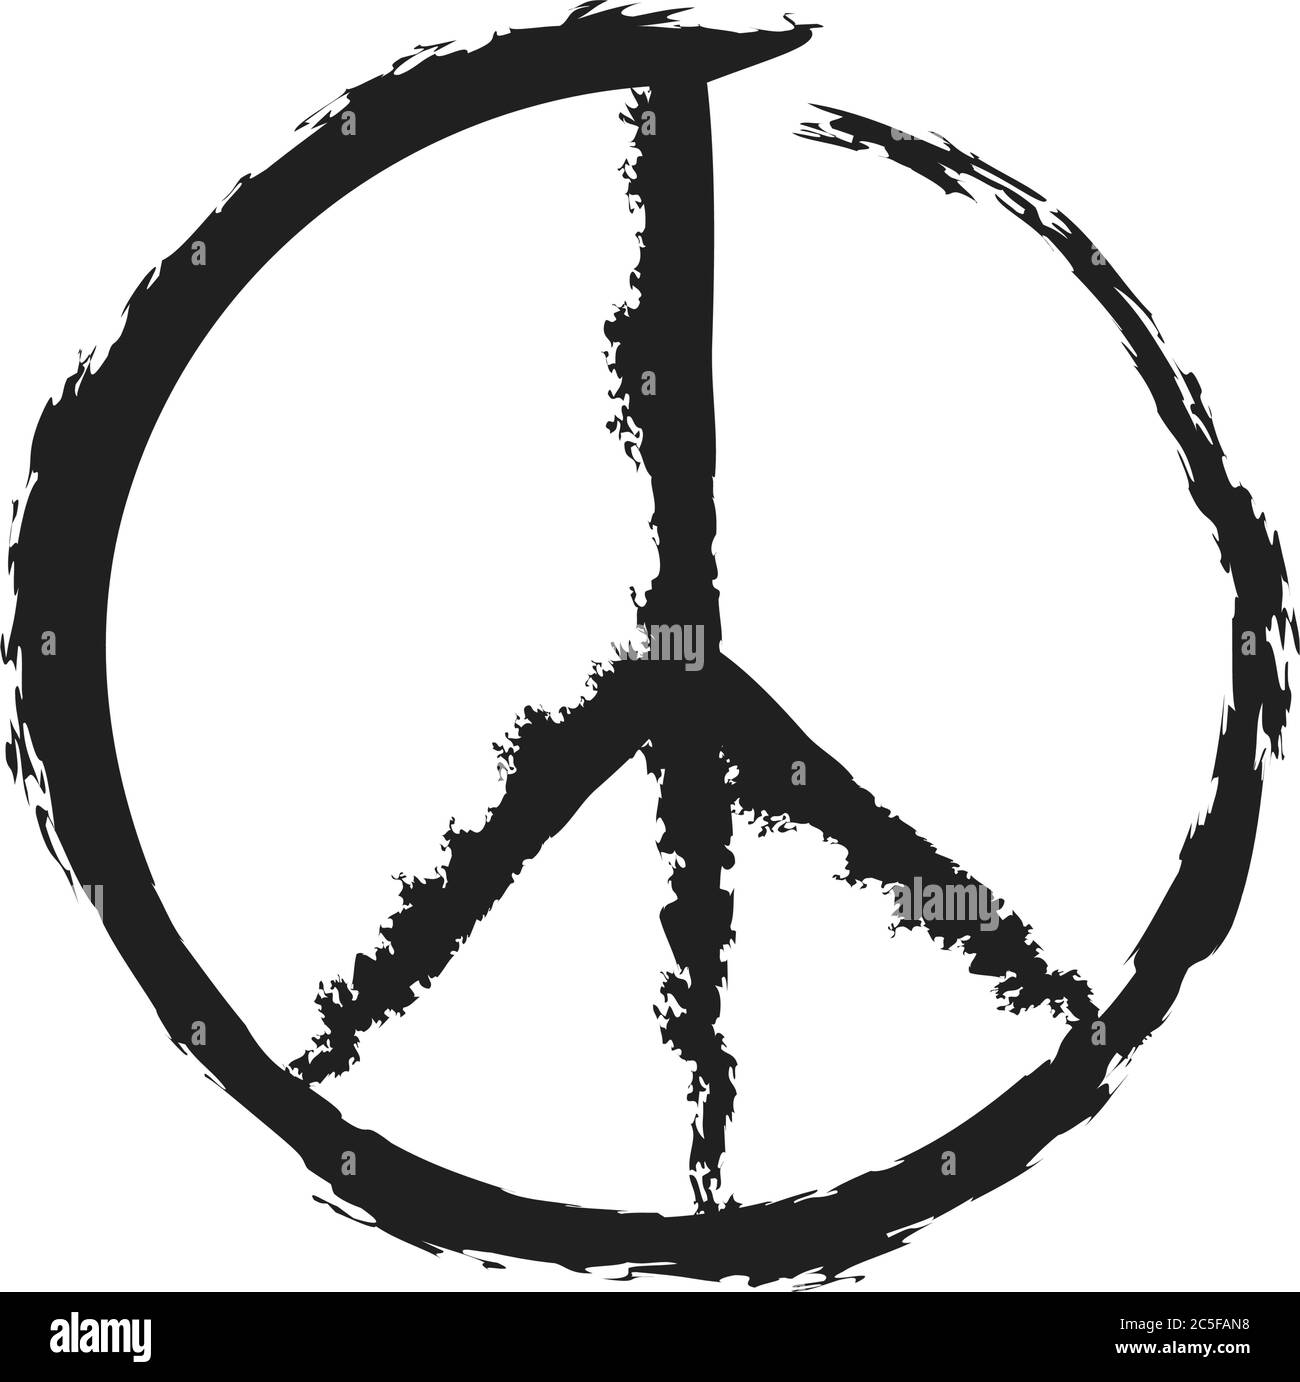 Pace e amore grunge sporco vettore simbolo di pace. Anti-guerra pacifismo icona hippie cultura segno illustrazione. Illustrazione Vettoriale